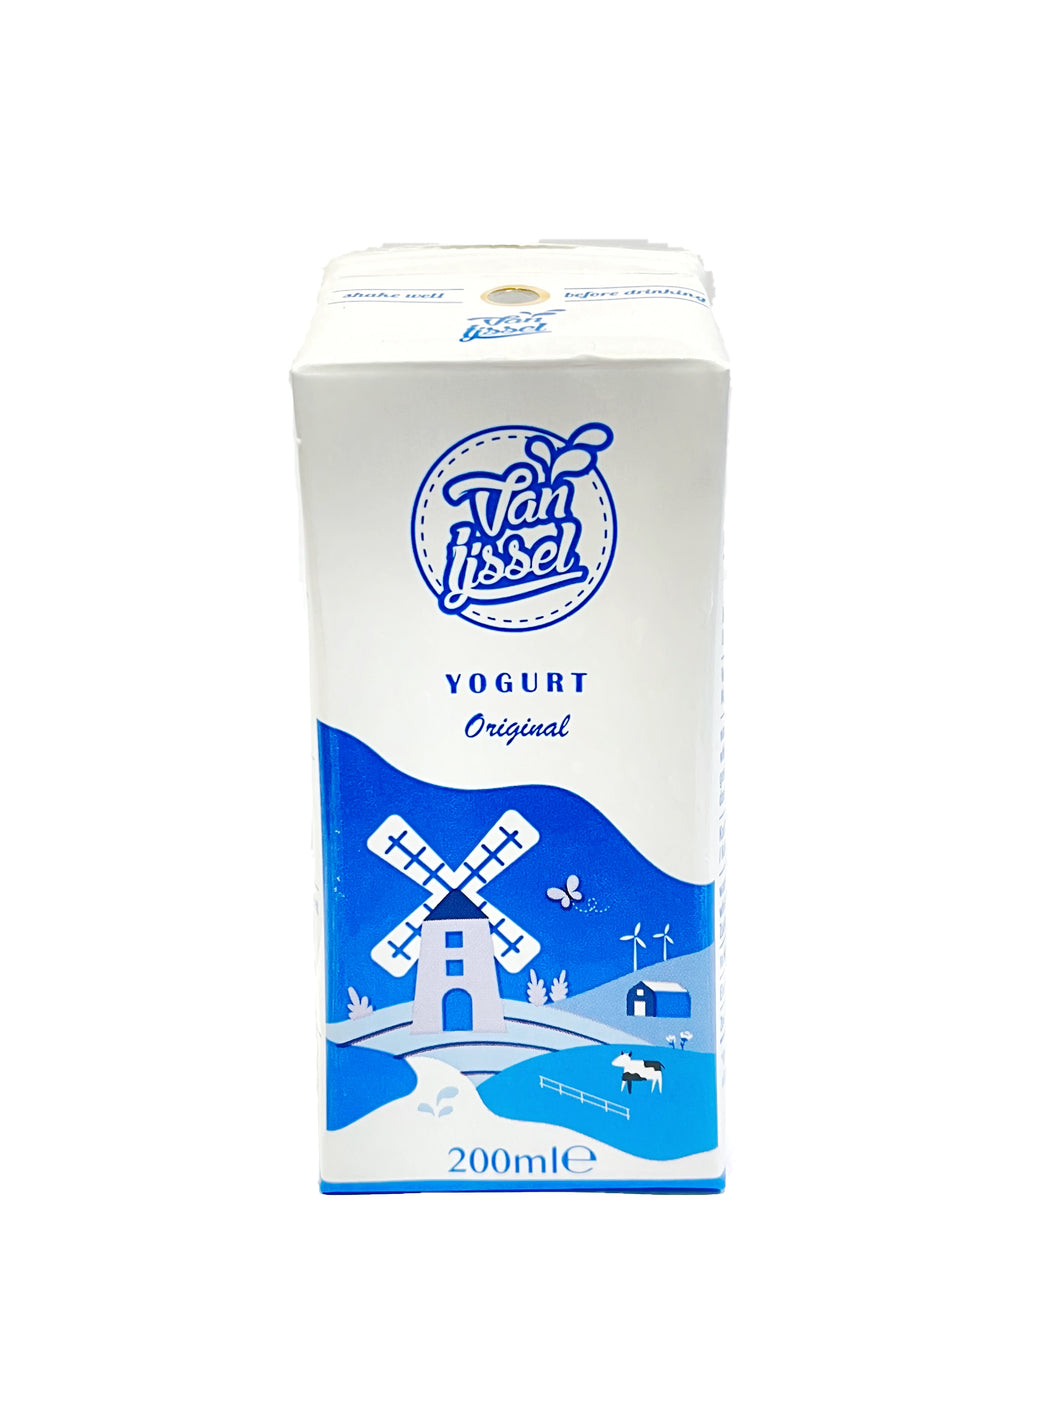 Van Ijssel Yogurt Drink - Original 200ml <br> 艾瑟爾 - 100% 純酸奶 - 原味